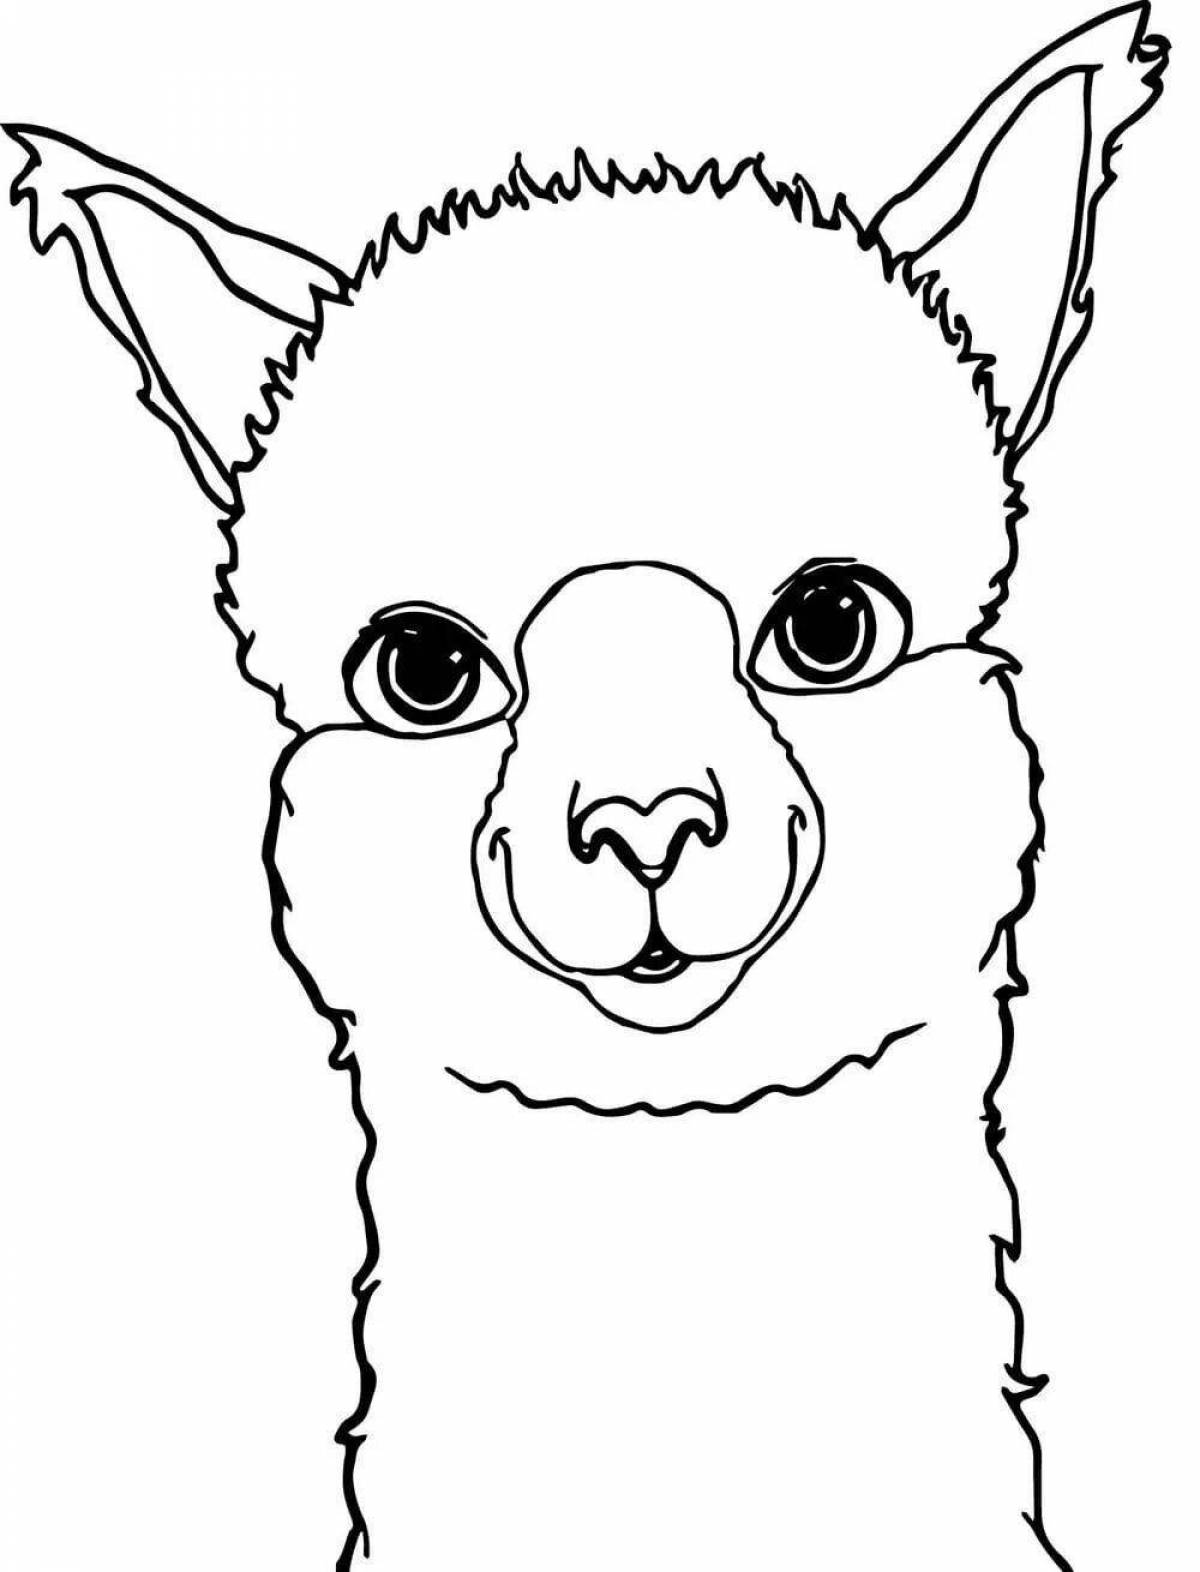 Cute cute llama coloring book